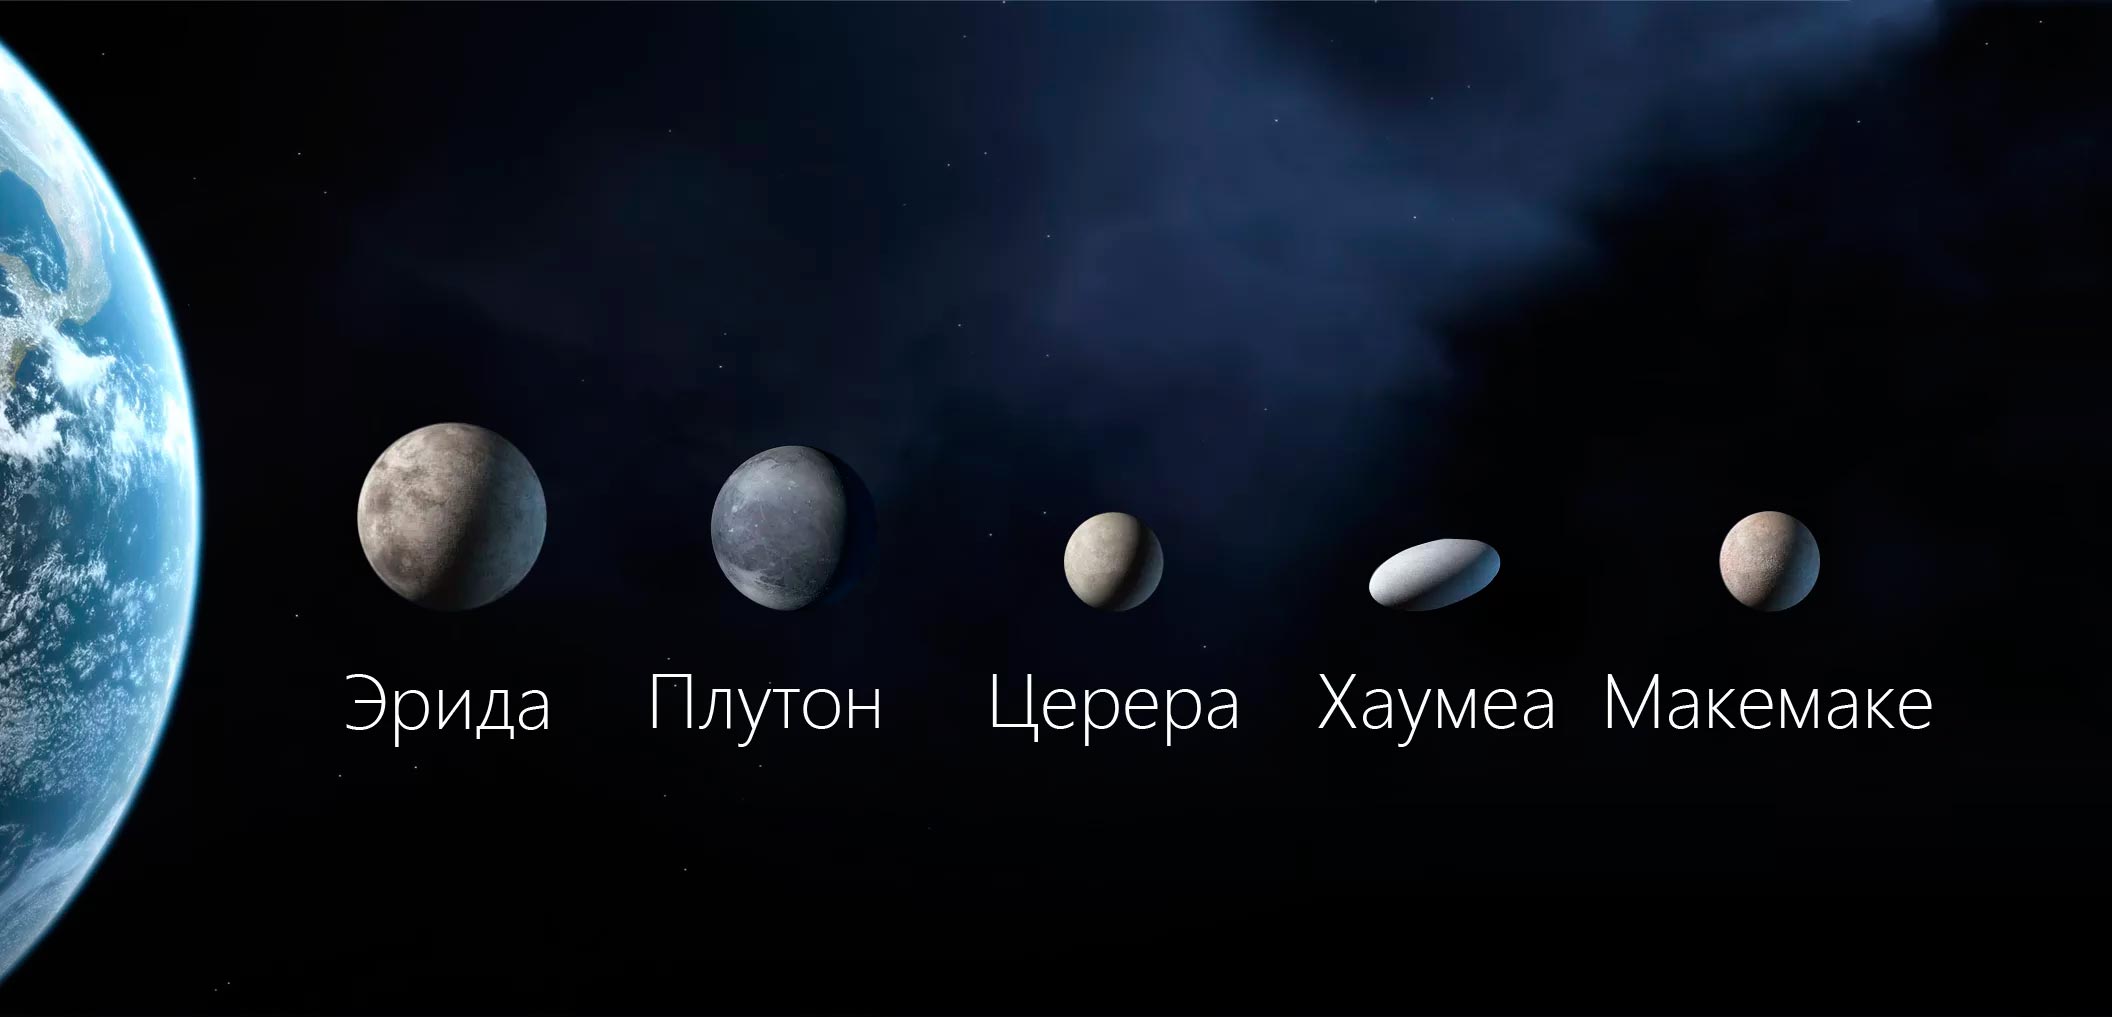 Сравнение размеров крупнейших карликовых планет (Плутон, Эрида, Церера, Макемаке, Хаумеа) с Землей